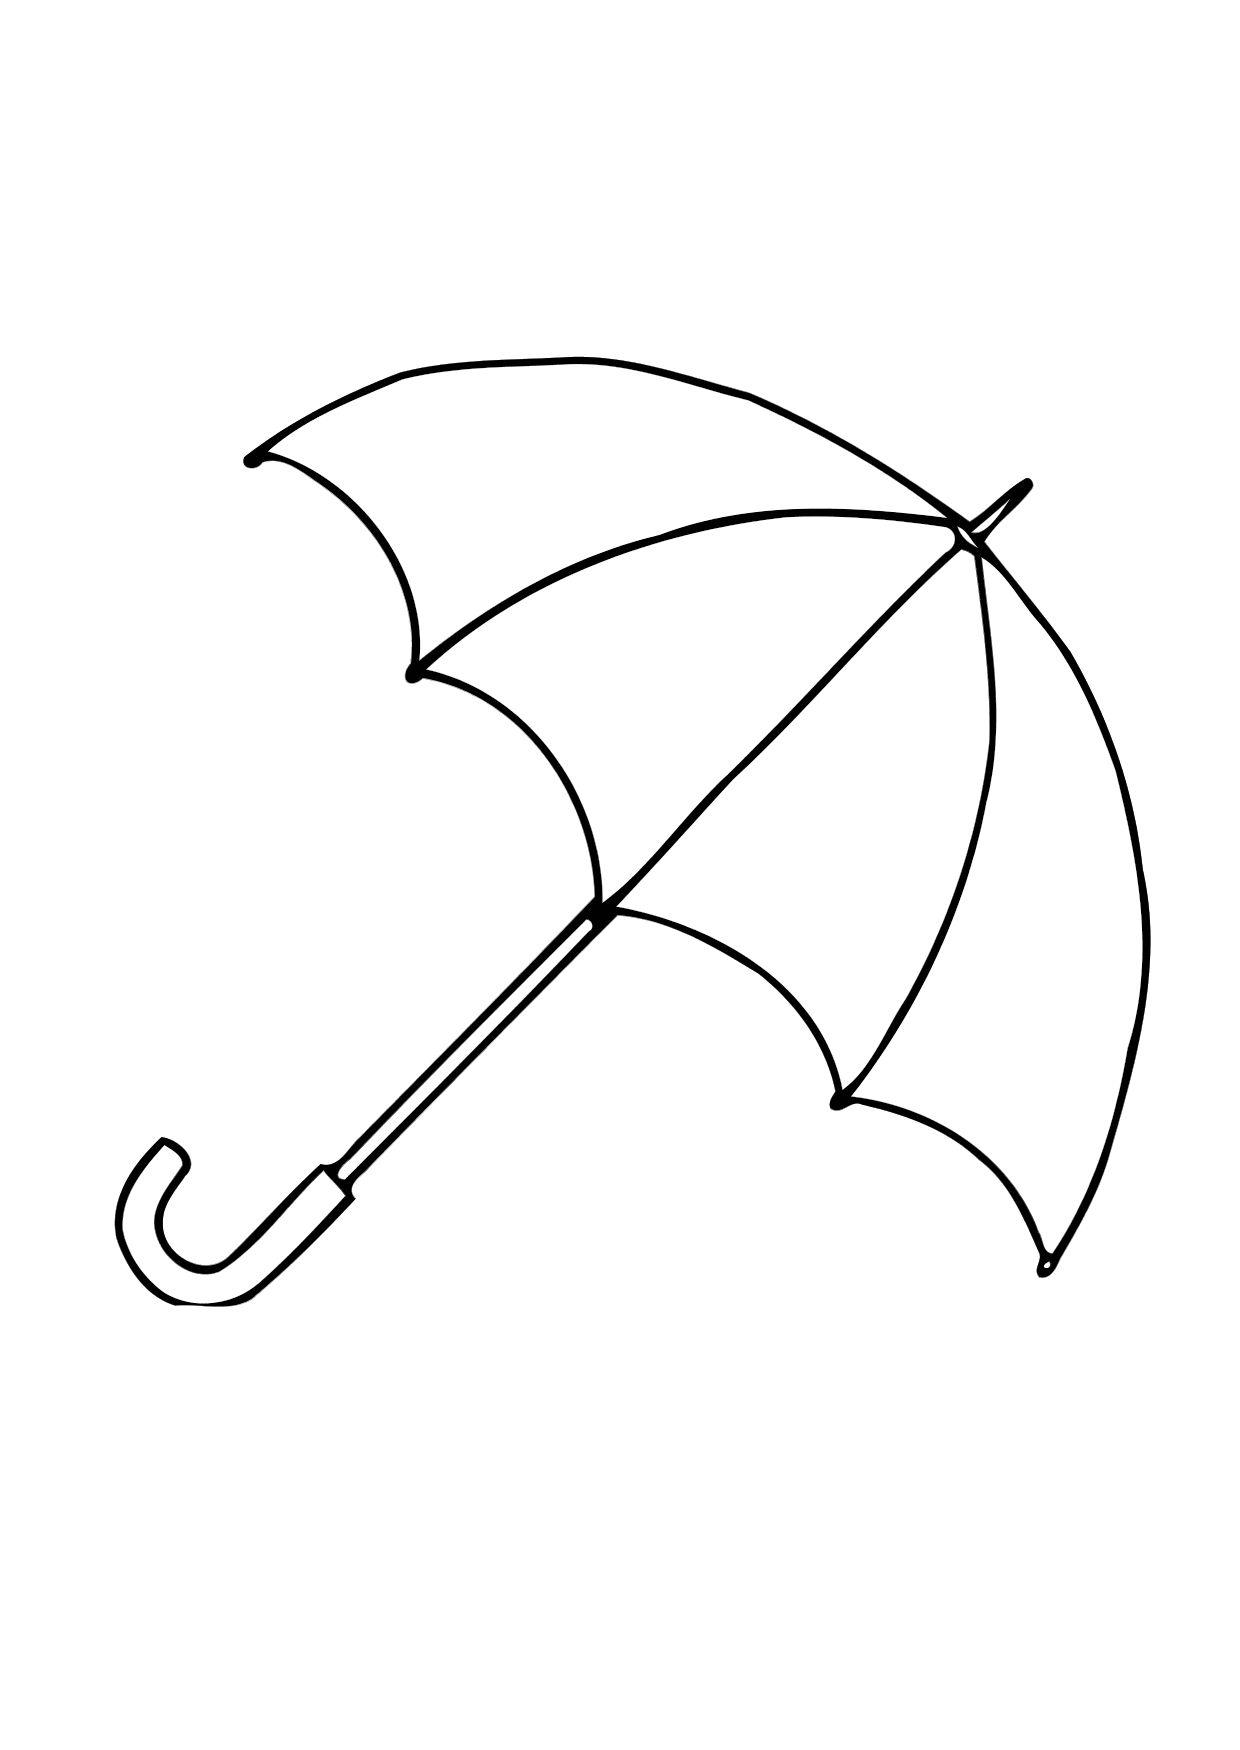 Página para colorir 01b. guarda-chuva - aberto